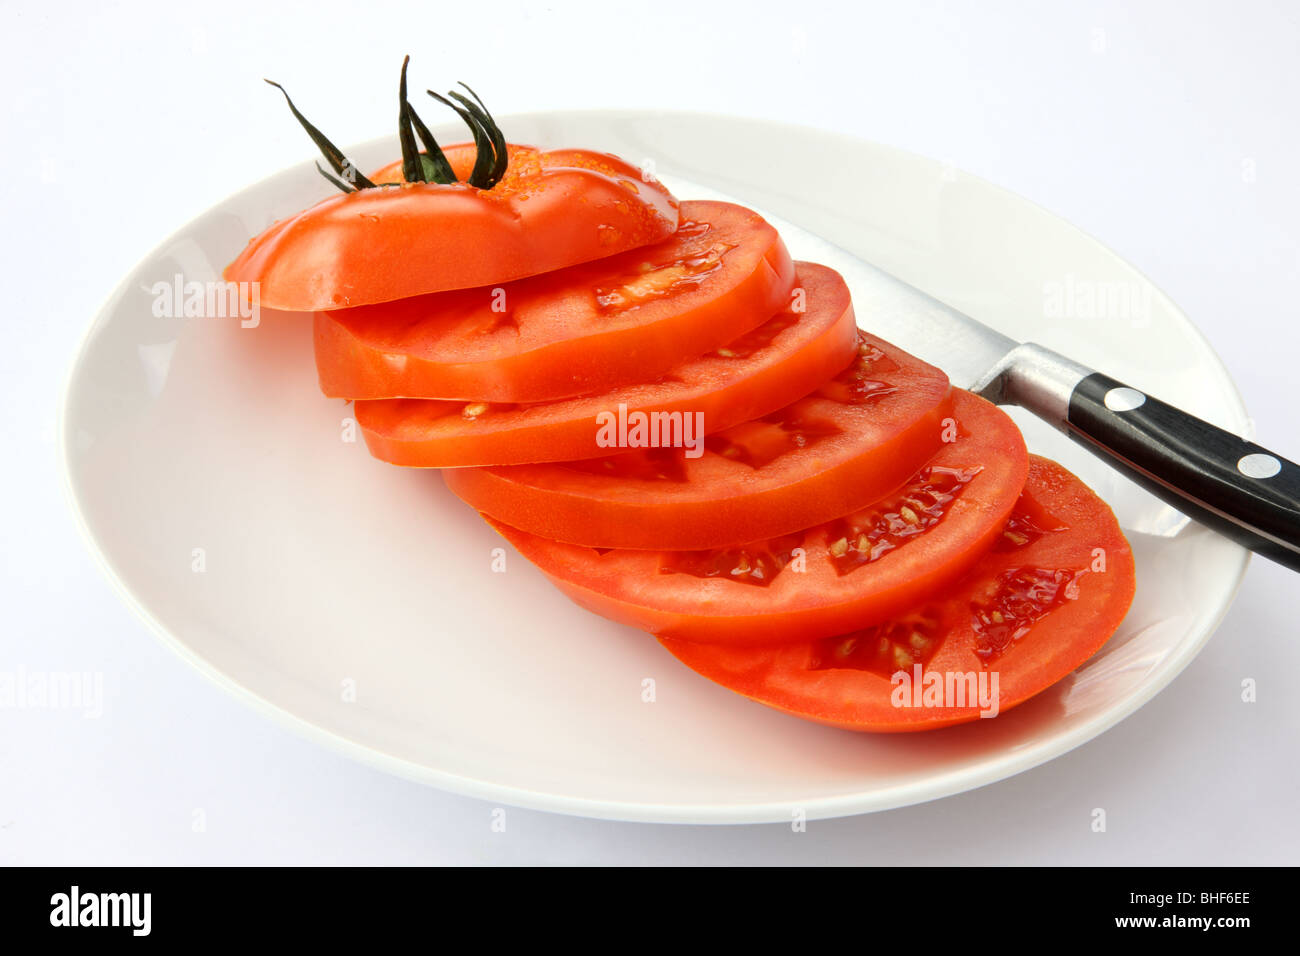 Eine rote, Reife, saftige Rindfleisch Tomaten in sechs Scheiben schneiden, mit Messer auf weißen Teller mit weißem Hintergrund. Stockfoto